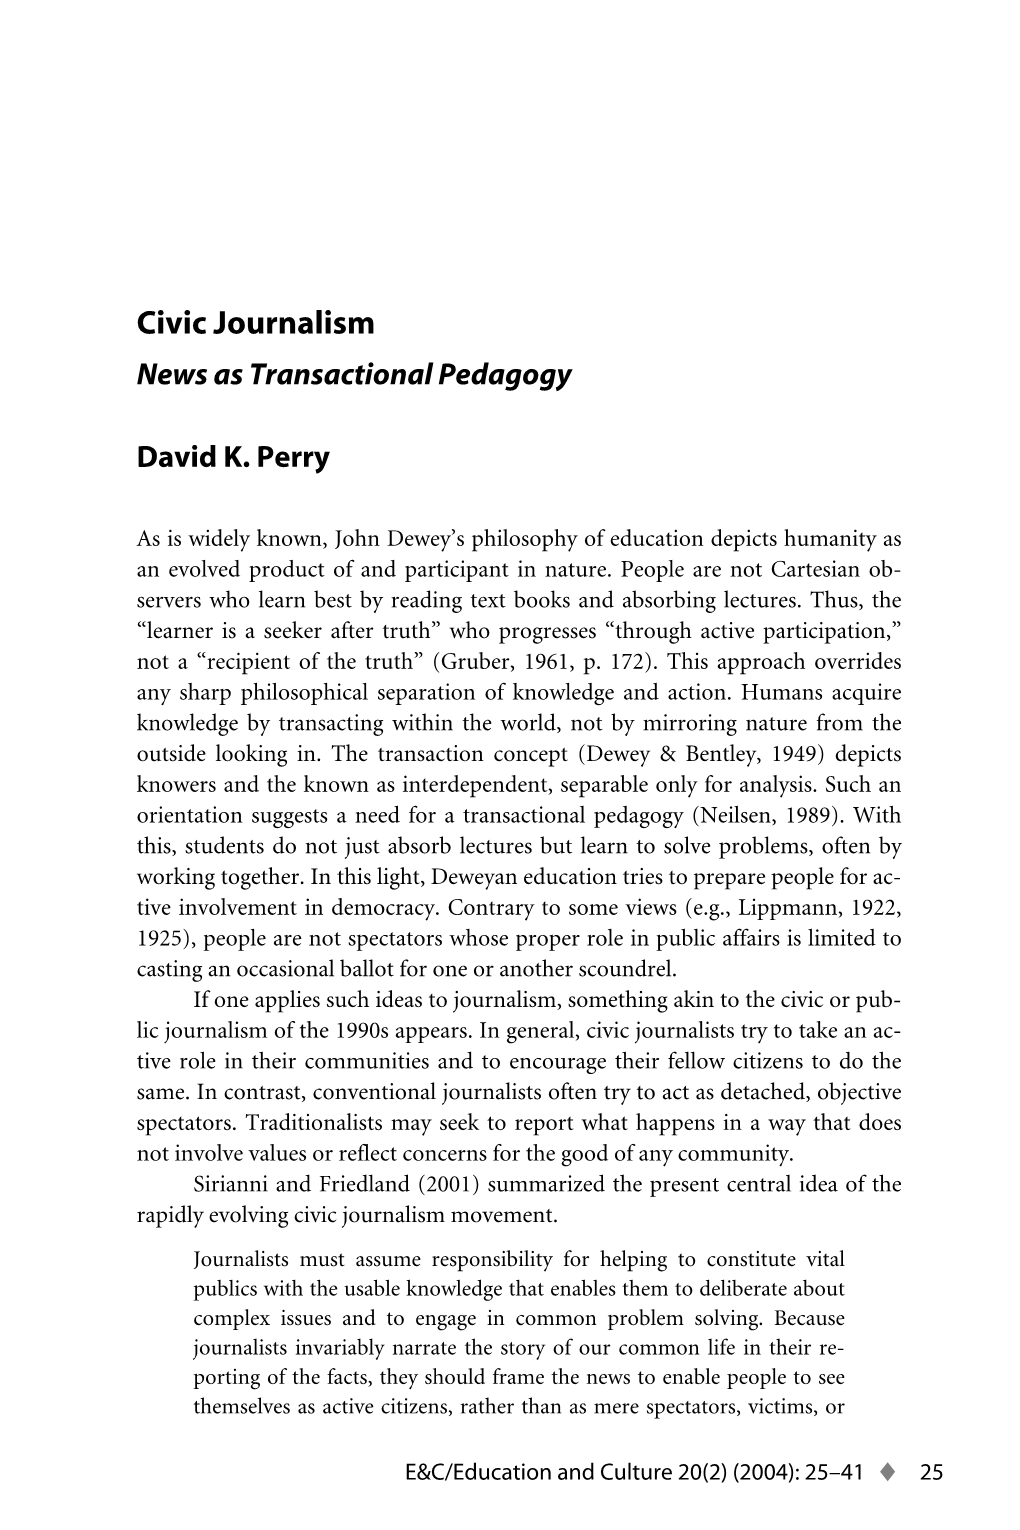 Civic Journalism: News As Transactional Pedagogy